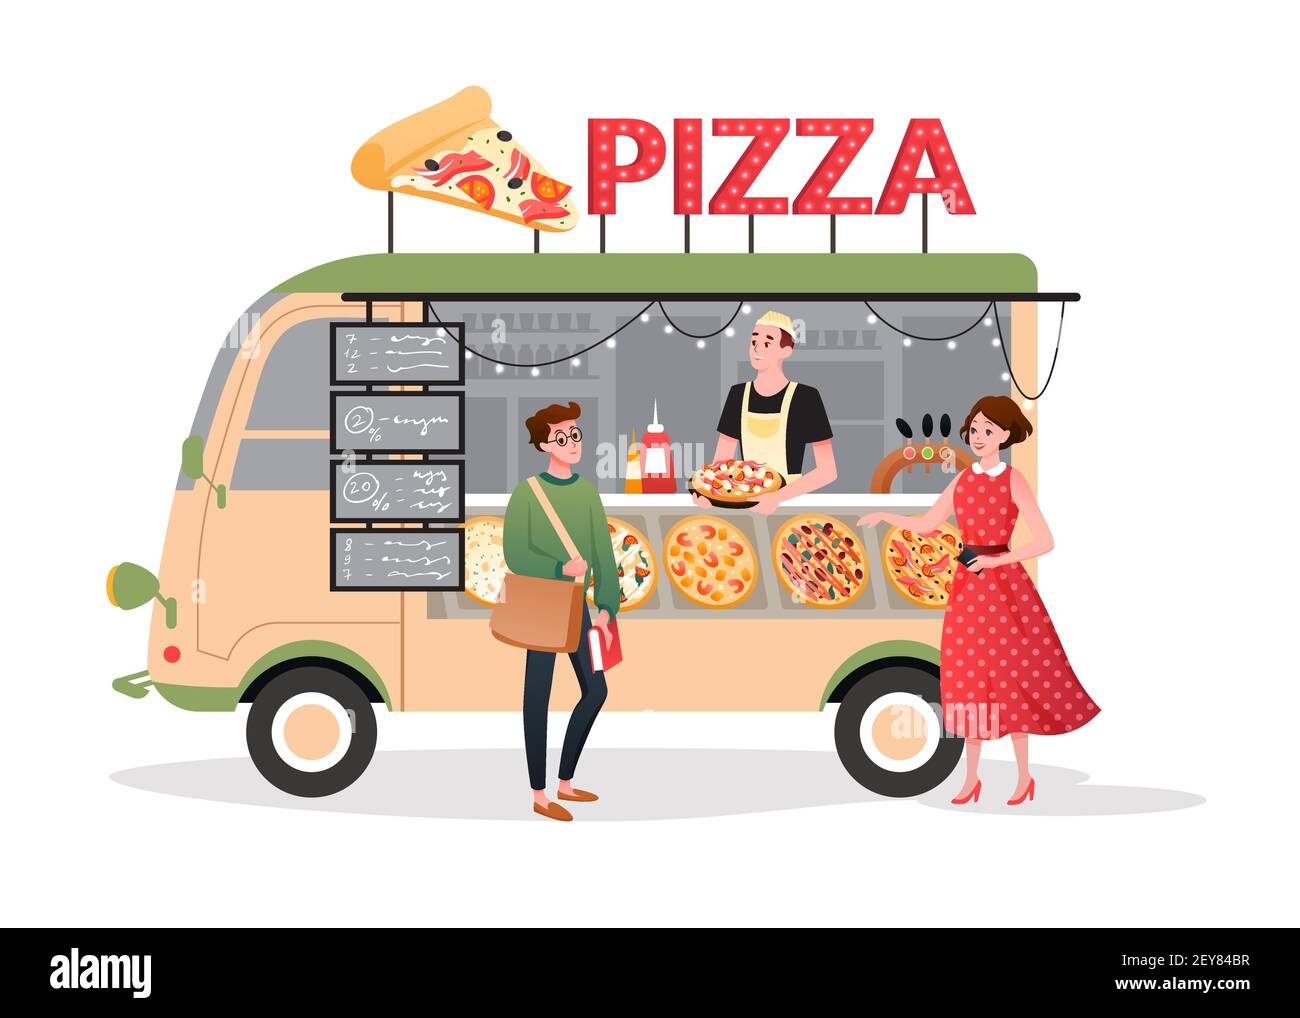 Pizza marché de rue camion alimentaire, mini pizzeria restaurant mobile boutique dans van bus food camion Illustration de Vecteur